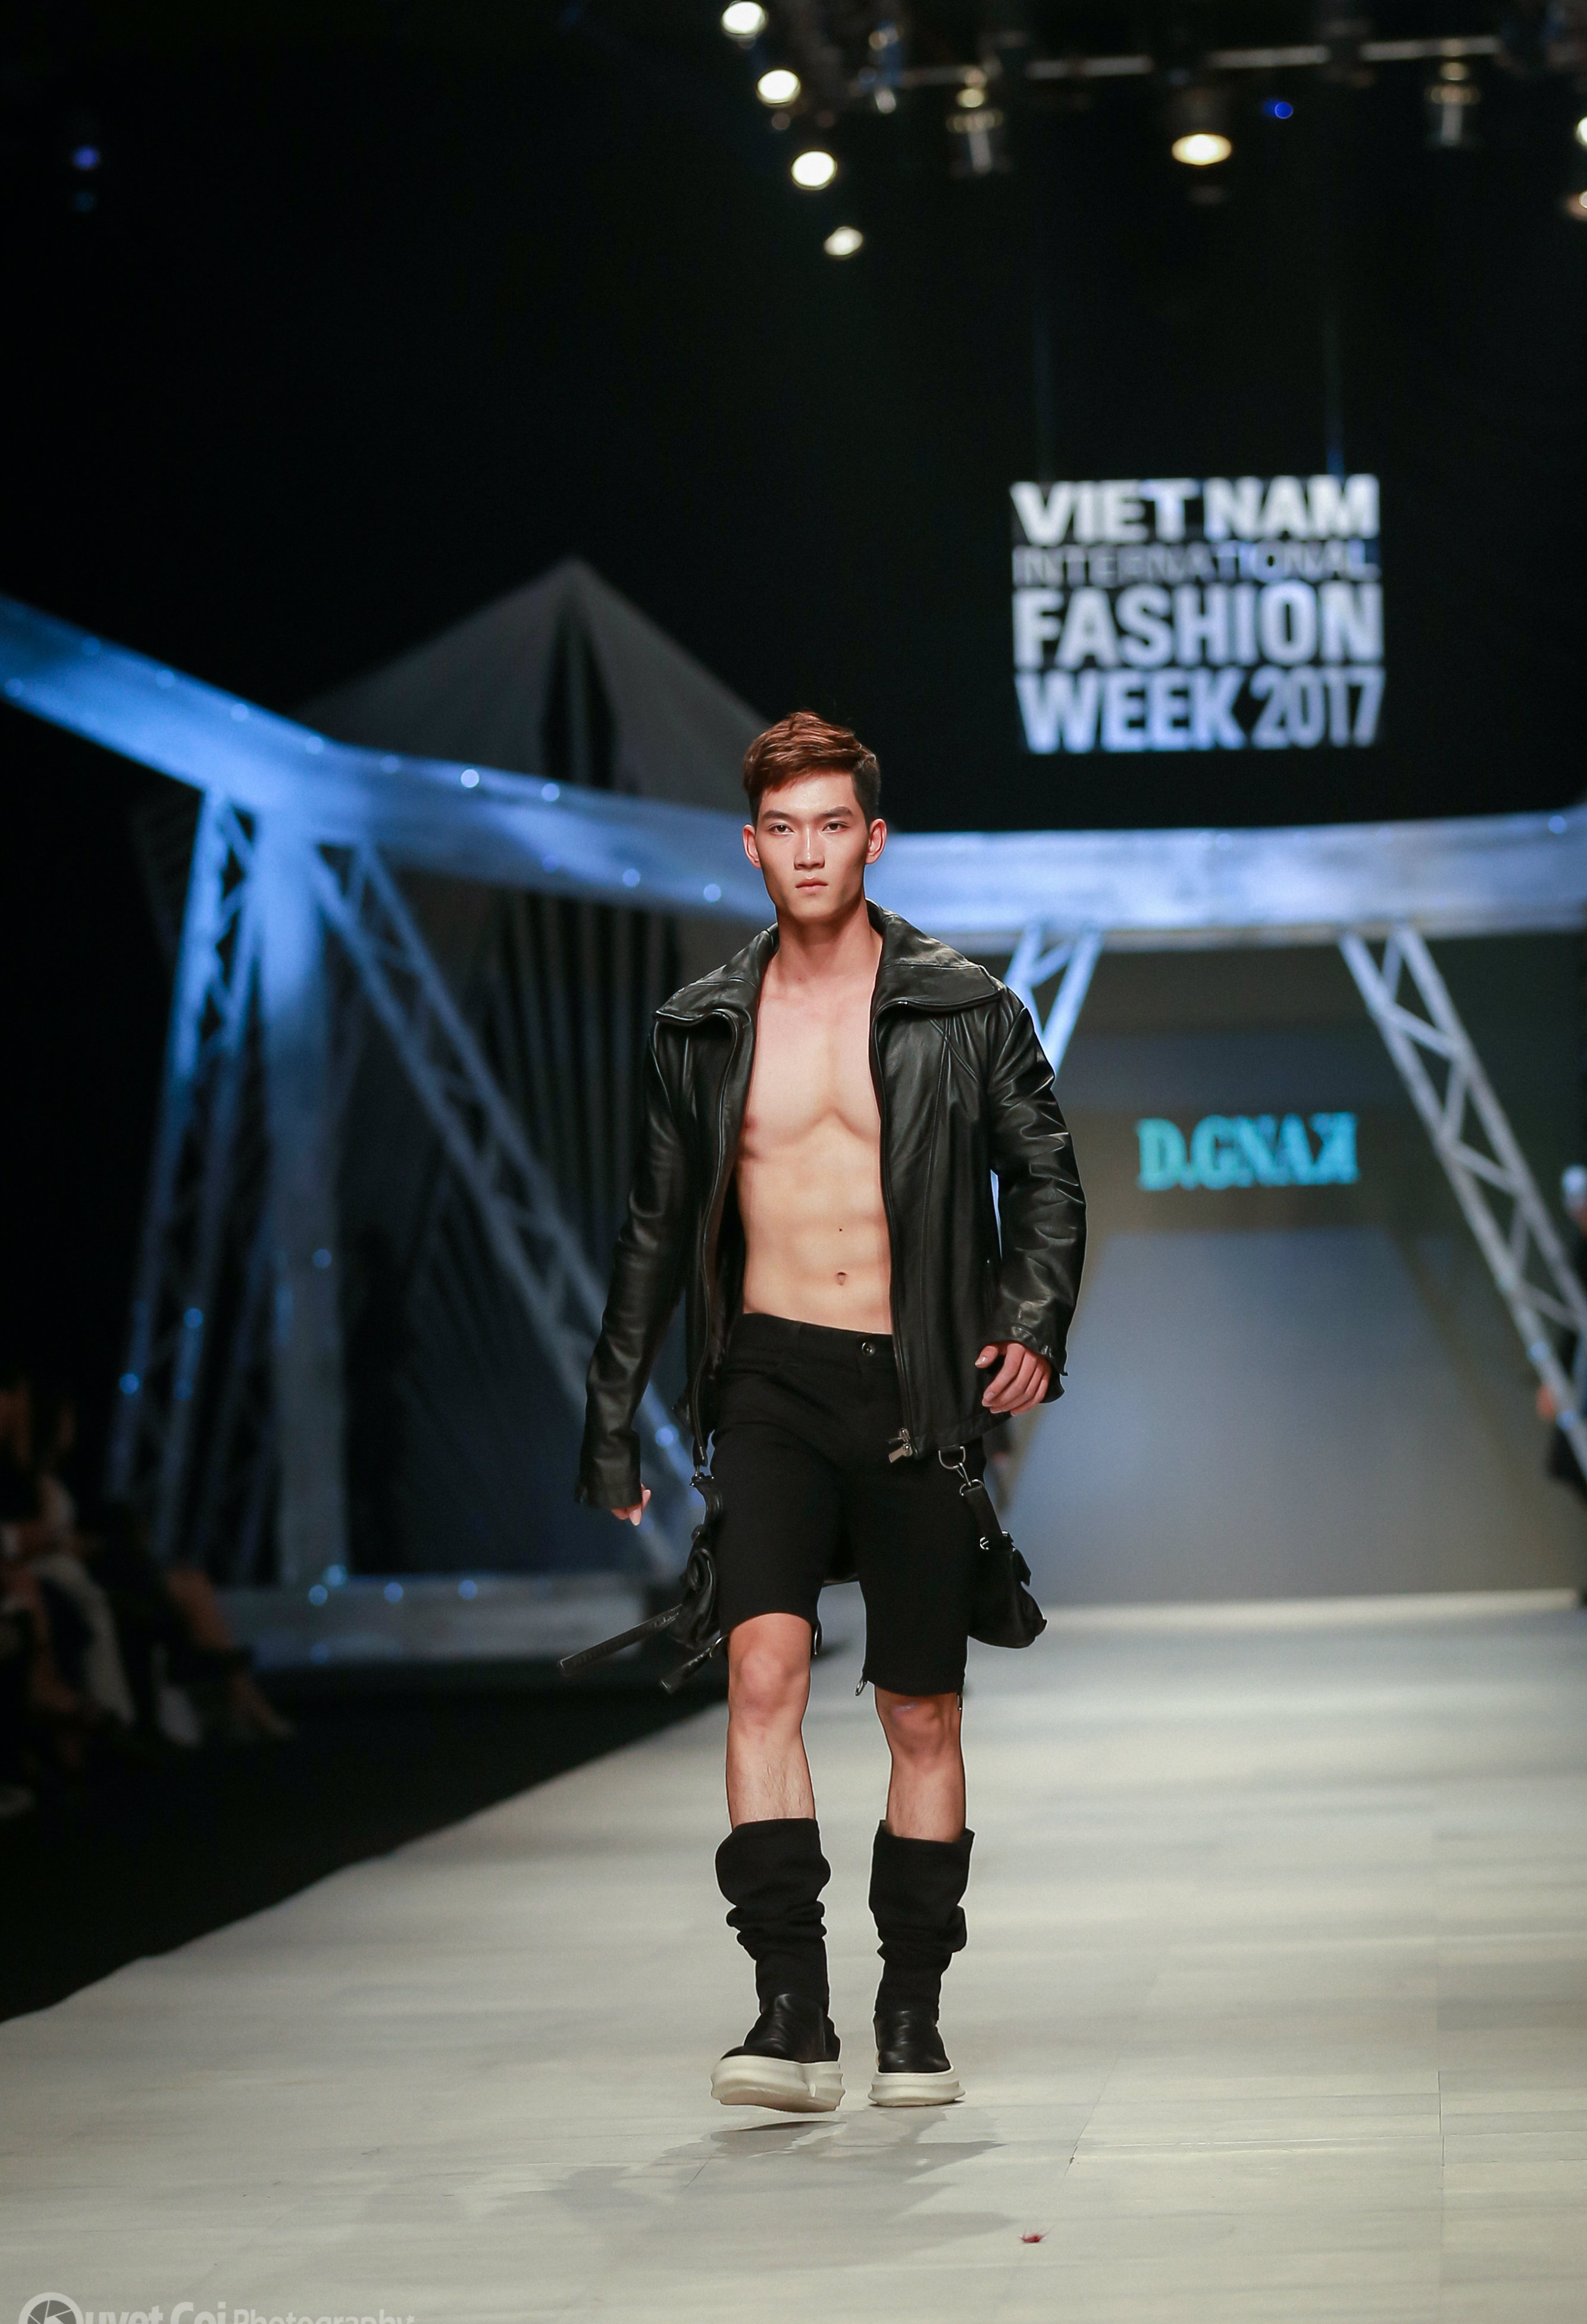 Anh tú trên sàn diễn Vietnam International Fashion Week 2017